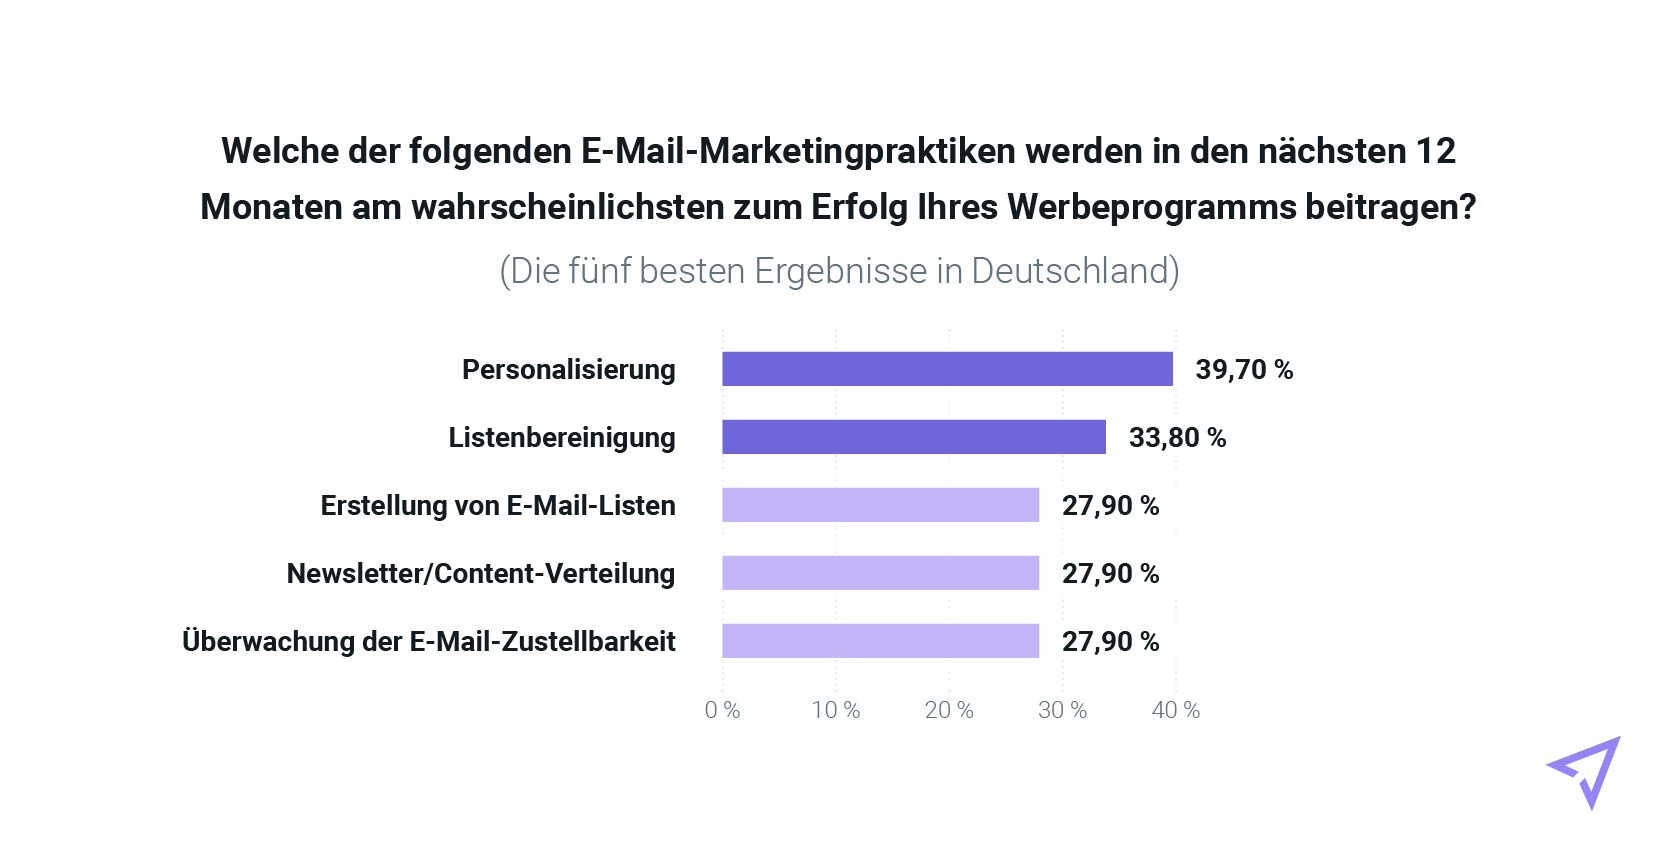 Tabelle mit den wichtigsten E-Mail-Praktiken (Ergebnisse aus Deutschland)